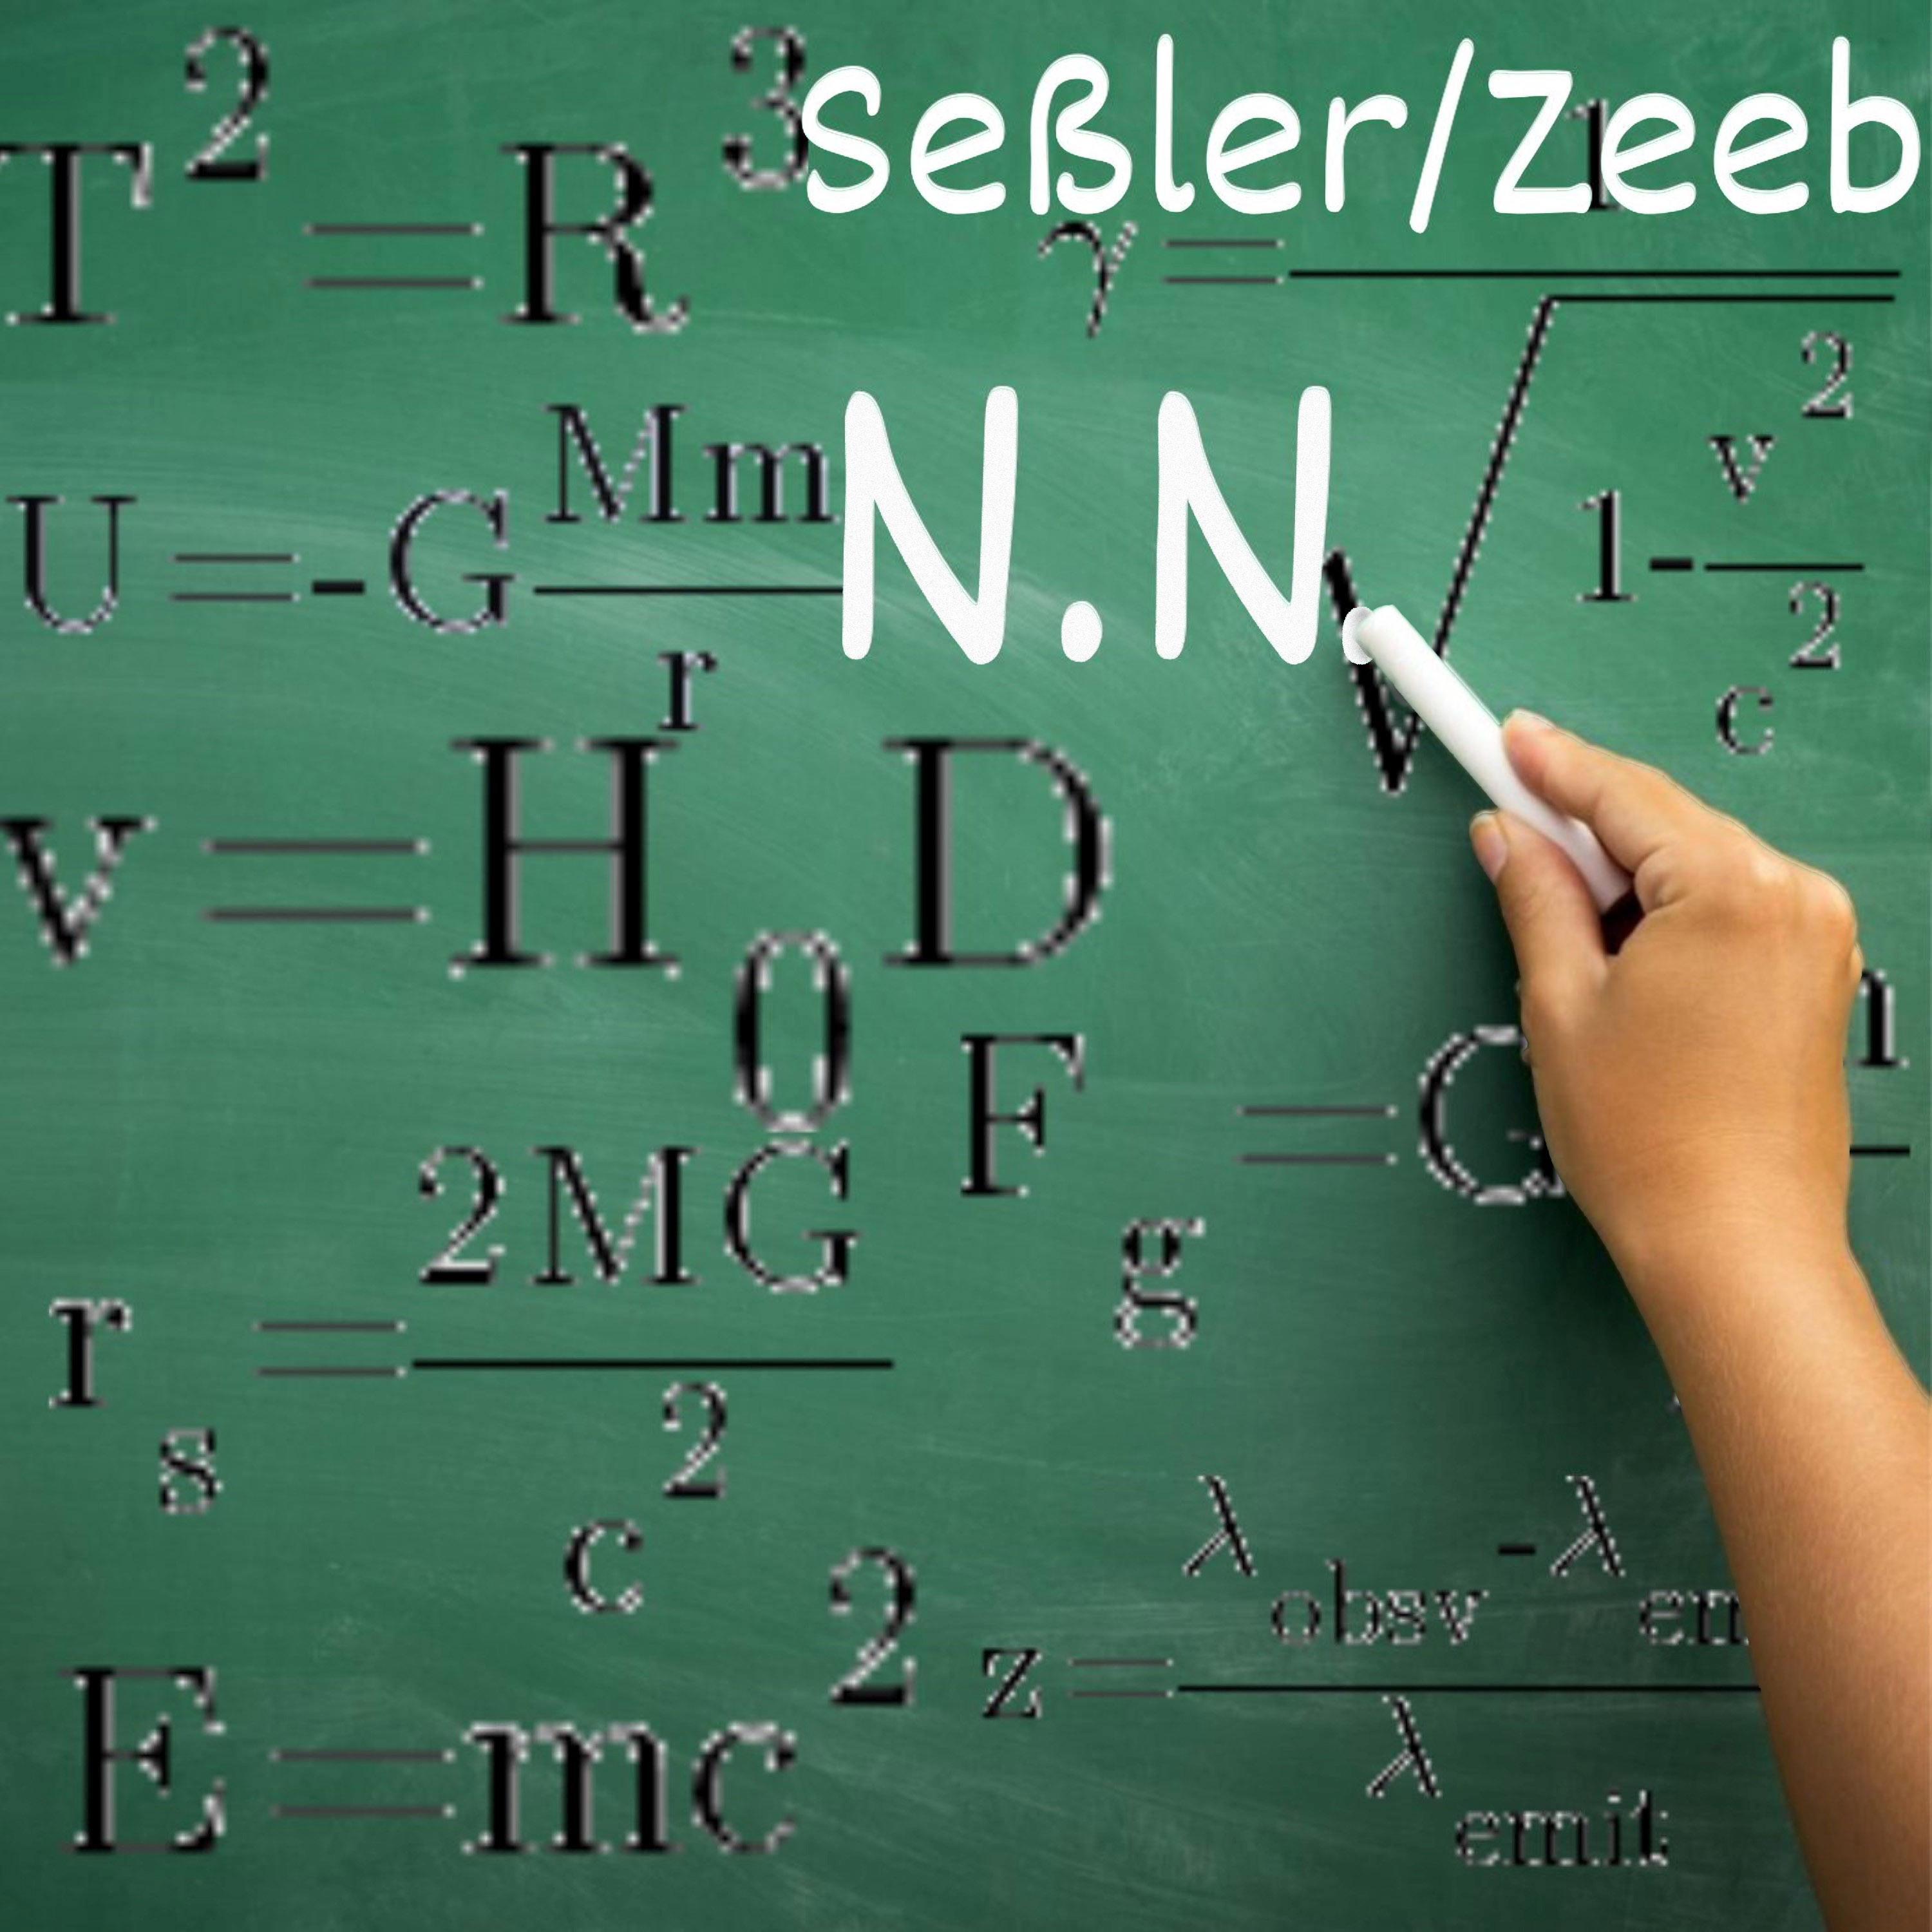 Seßler/Zeeb – “N.N.”